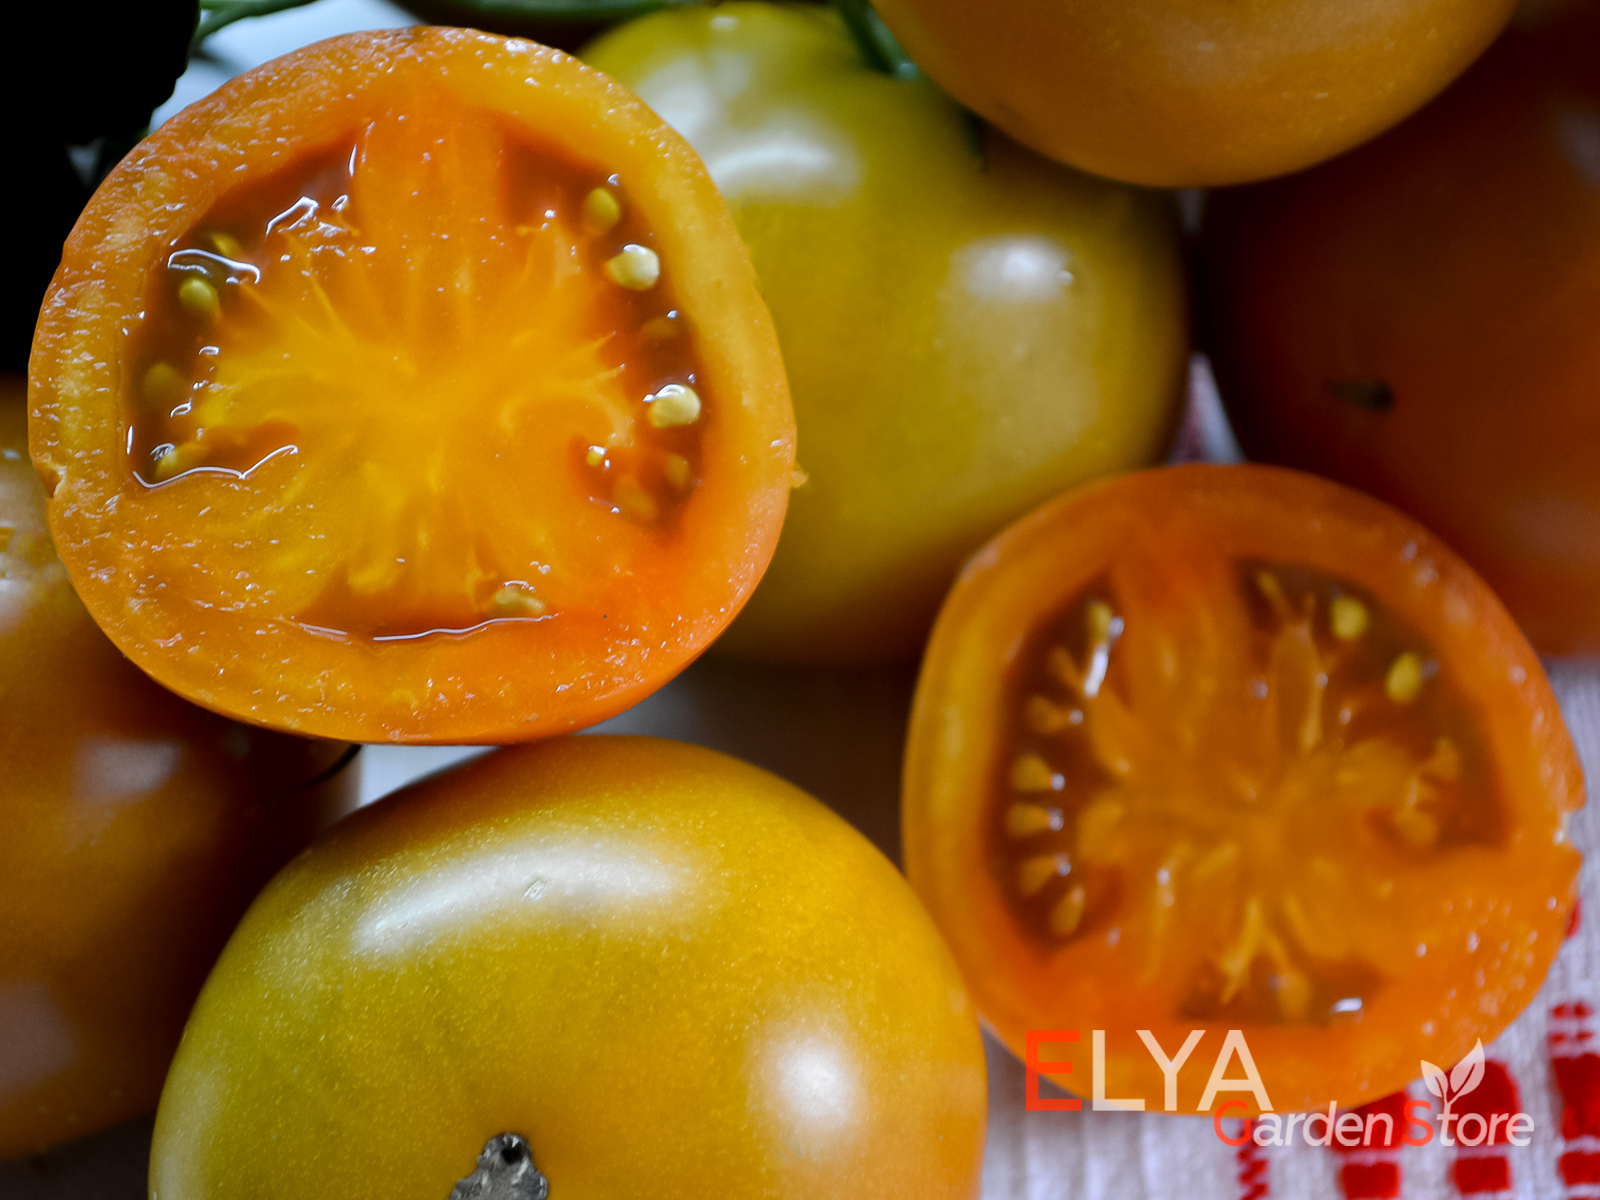 Семена томата Киванис в магазине коллекционных сортов Elya Garden - фотография